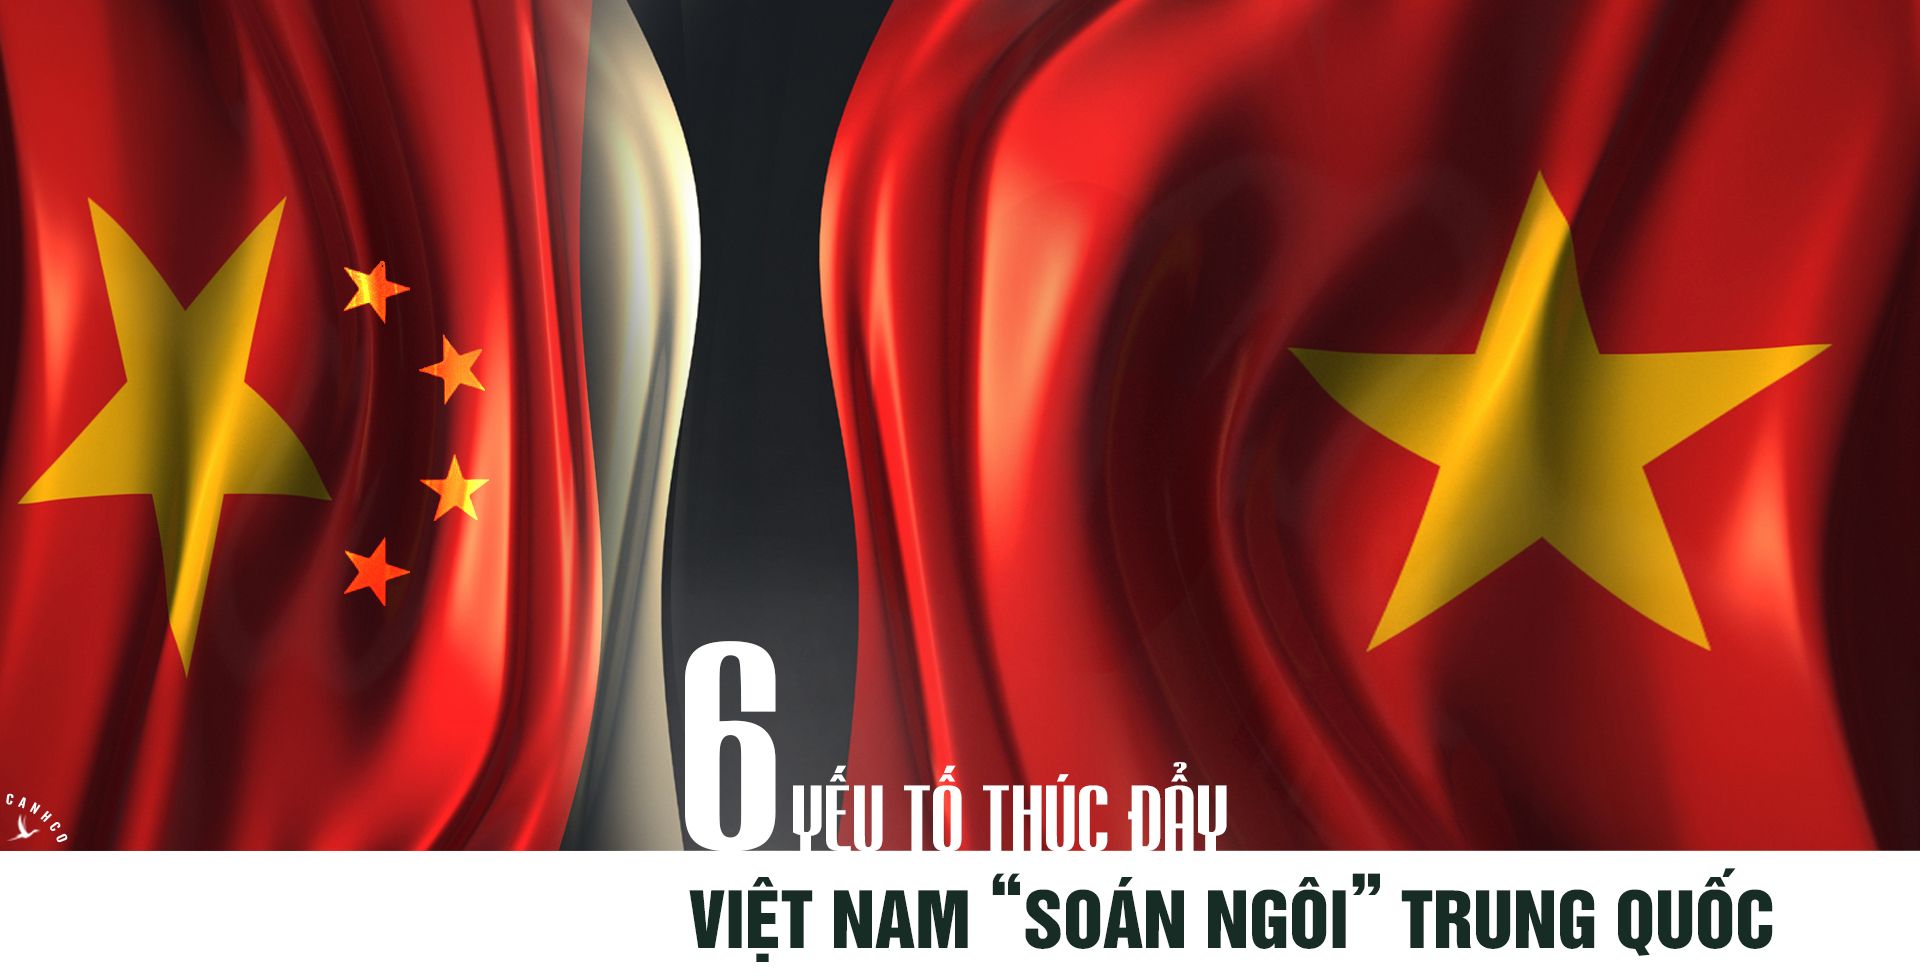 Sáu yếu tố thúc đẩy Việt Nam “soán ngôi” Trung Quốc